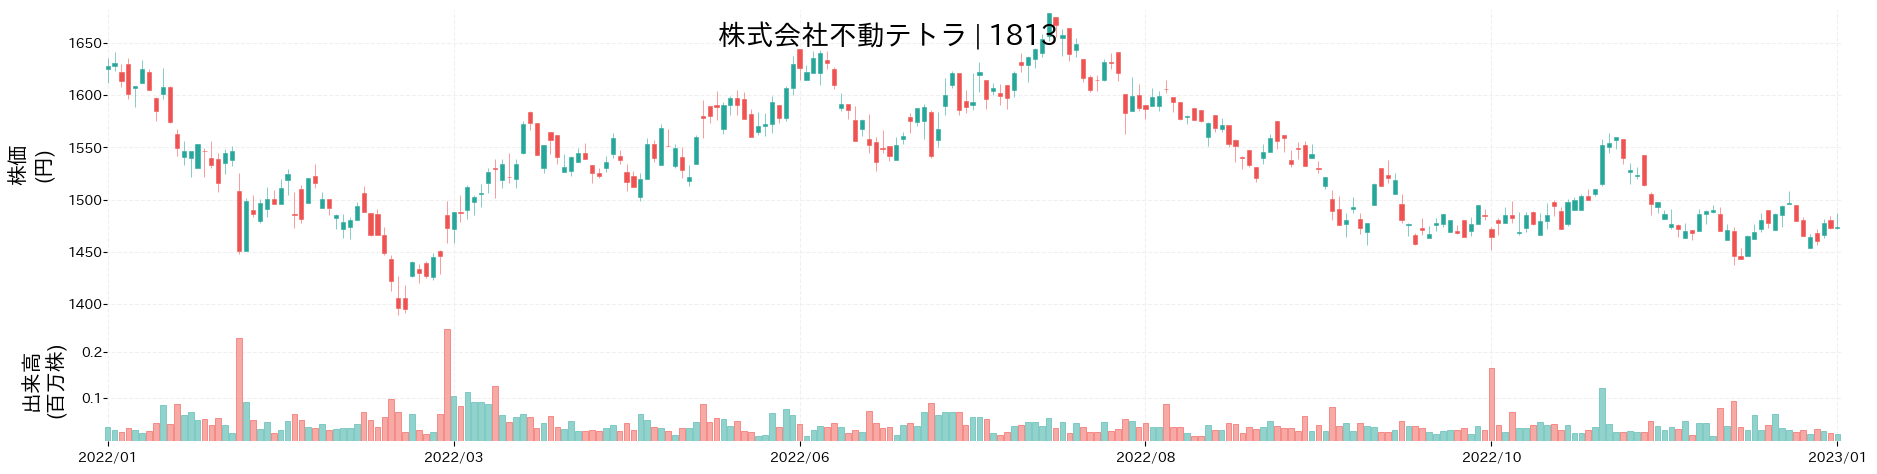 不動テトラの株価推移(2022)